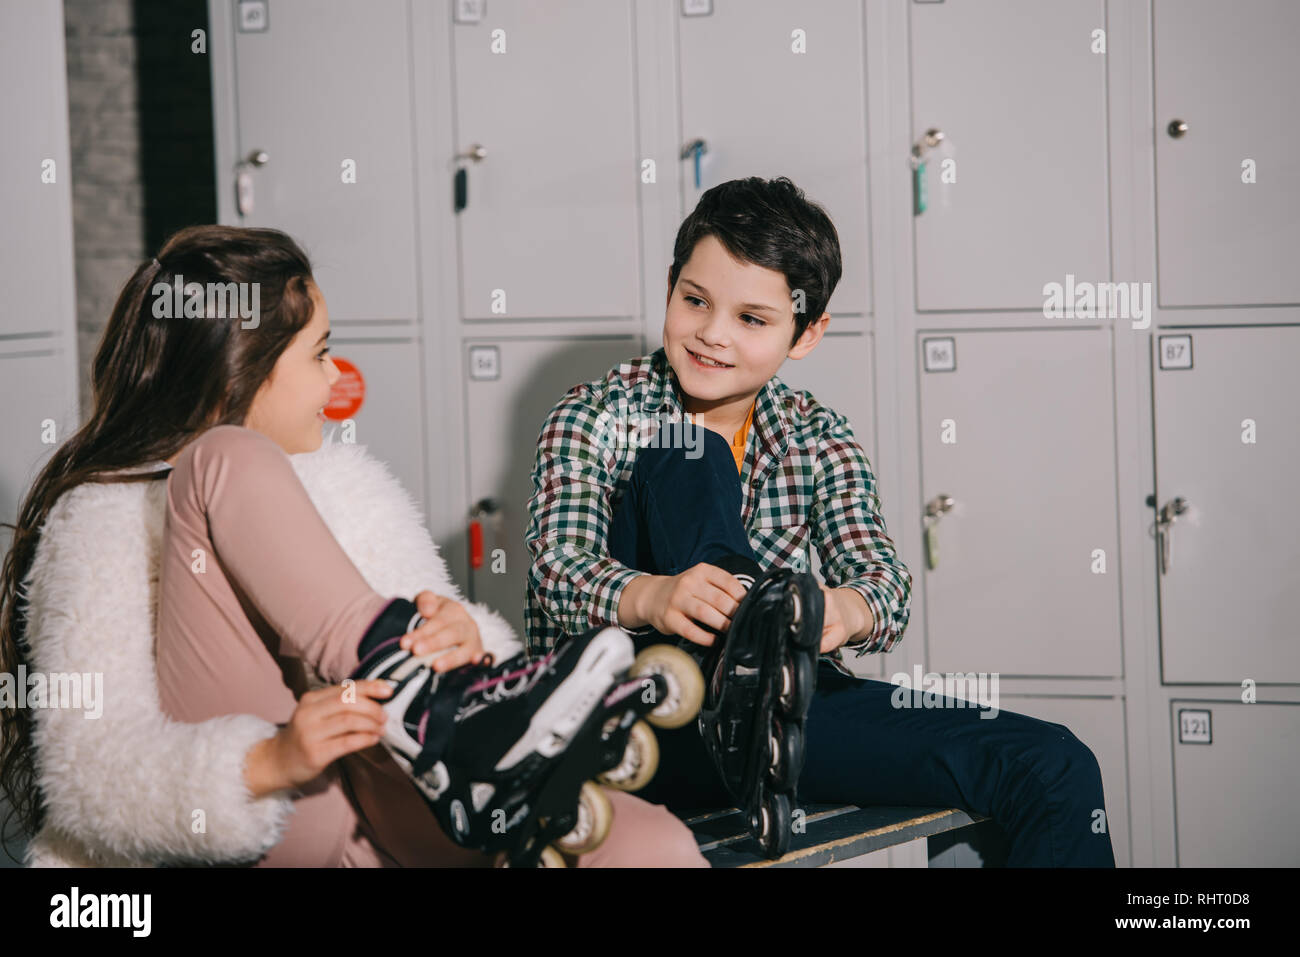 Kids in roller skates talking in locker room Stock Photo